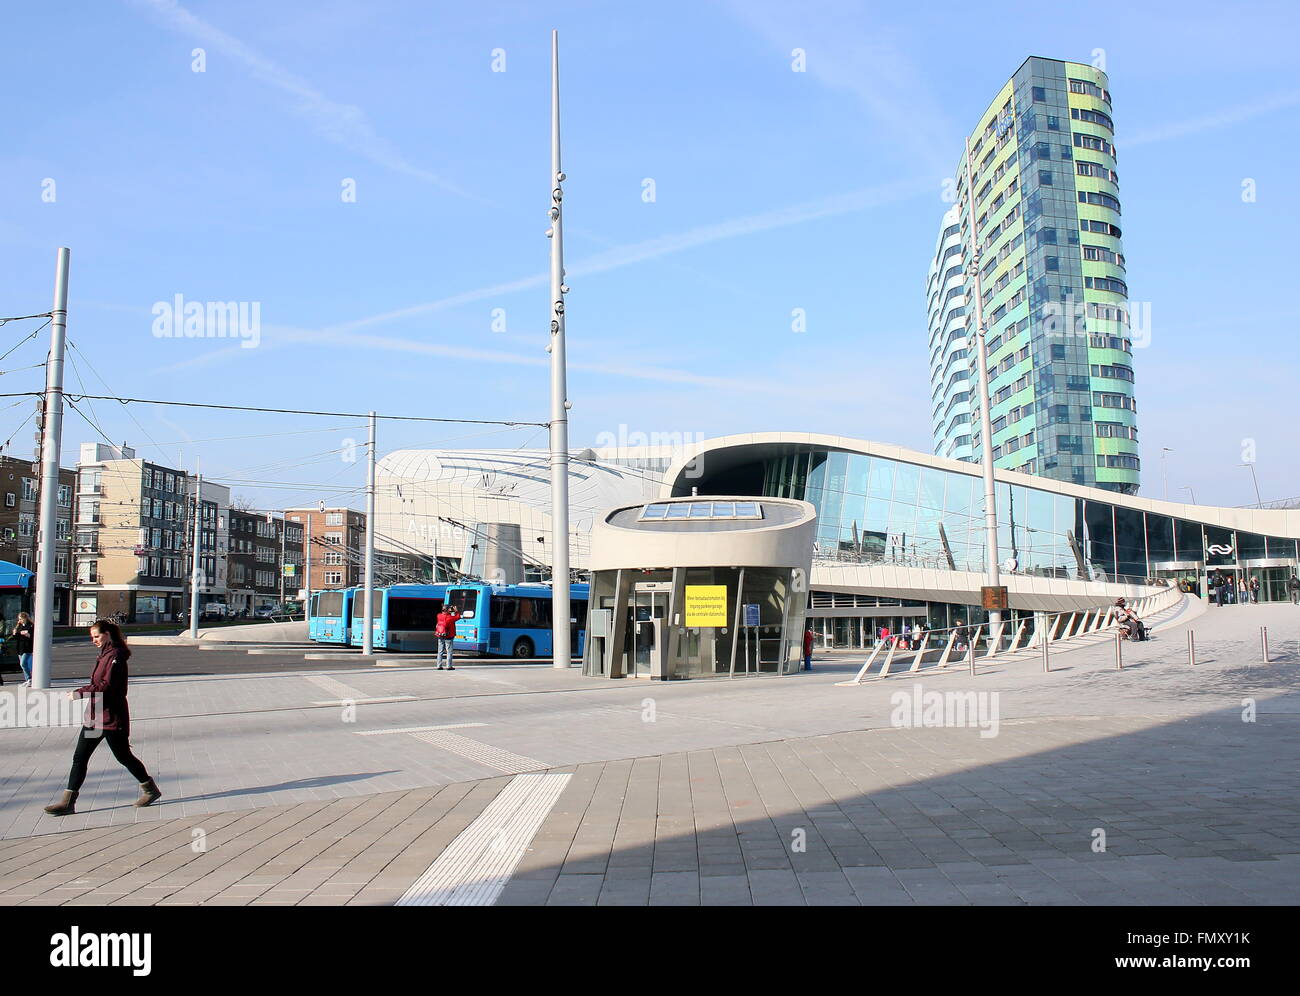 Piazza della stazione di fronte alla stazione ferroviaria centrale di Arnhem, Paesi Bassi, progettato dall'architetto Ben van Berkel (UNStudio) Foto Stock